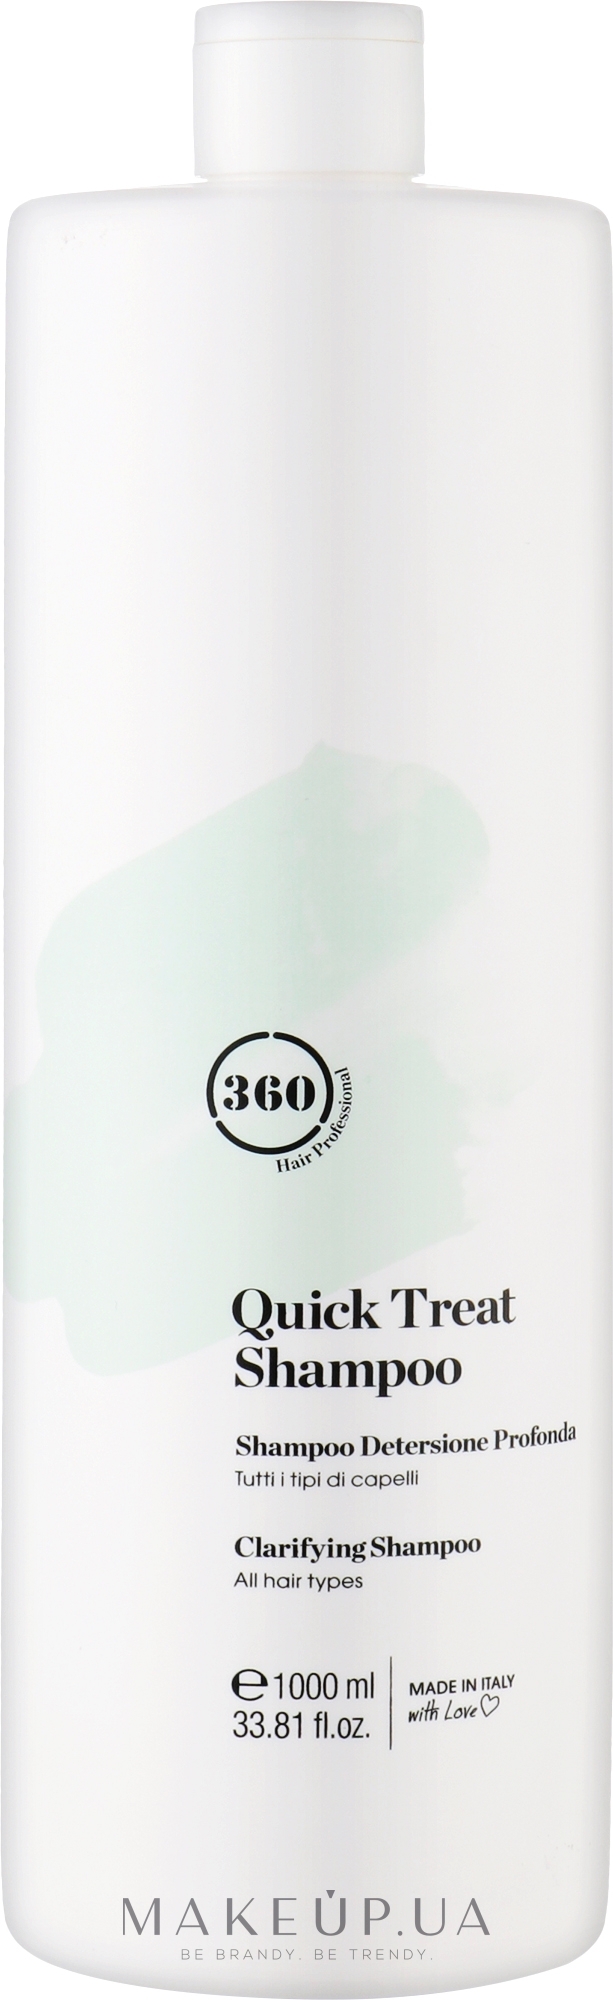 Шампунь для глибокого очищення всіх типів волосся - 360 Be Quick Treat Shampoo — фото 1000ml